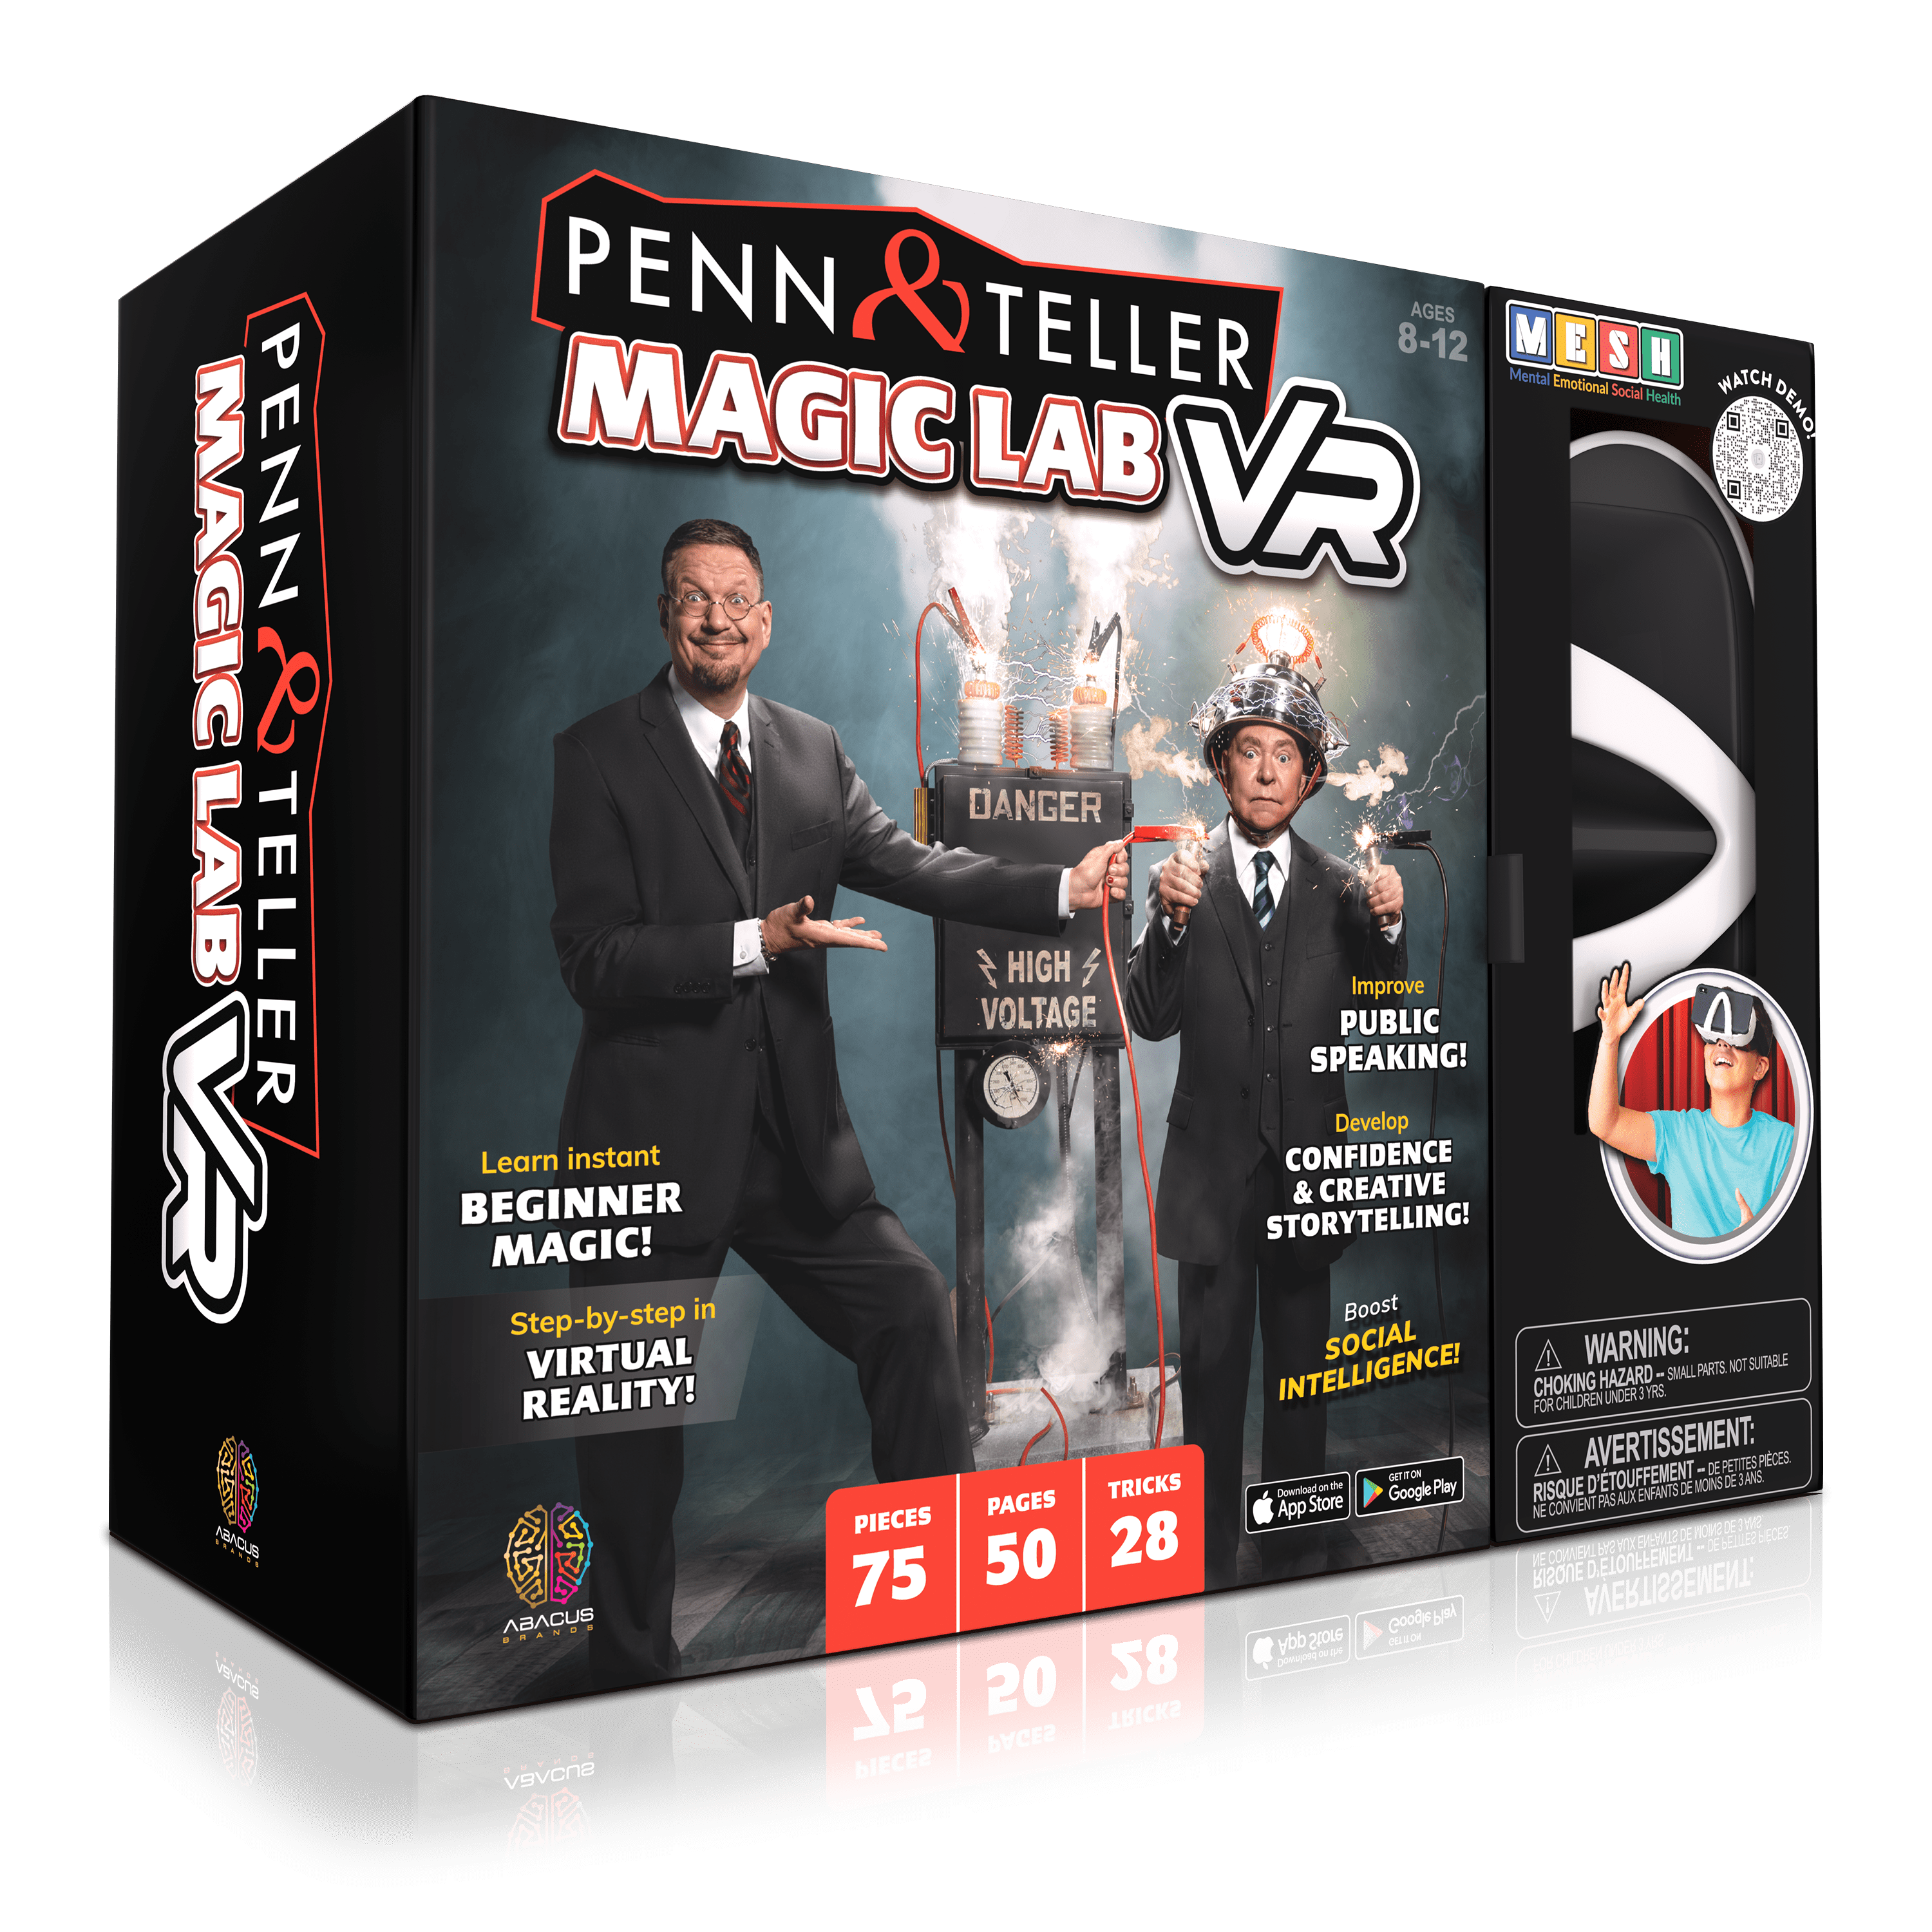 Penn & Teller's VR Magic Lab Experience - Magic Lab VR